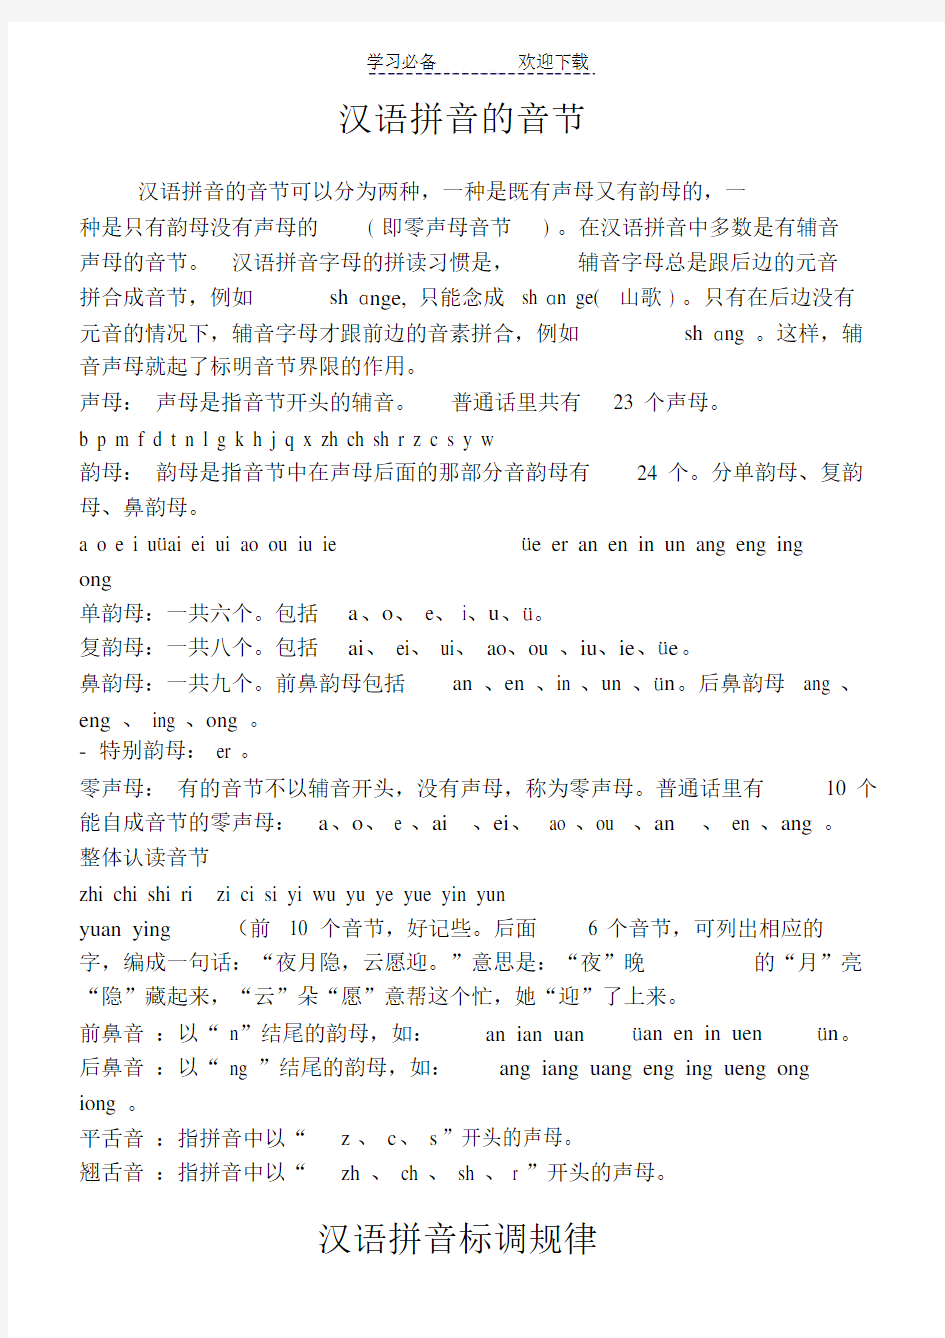 汉语拼音的音节拼写规则总结